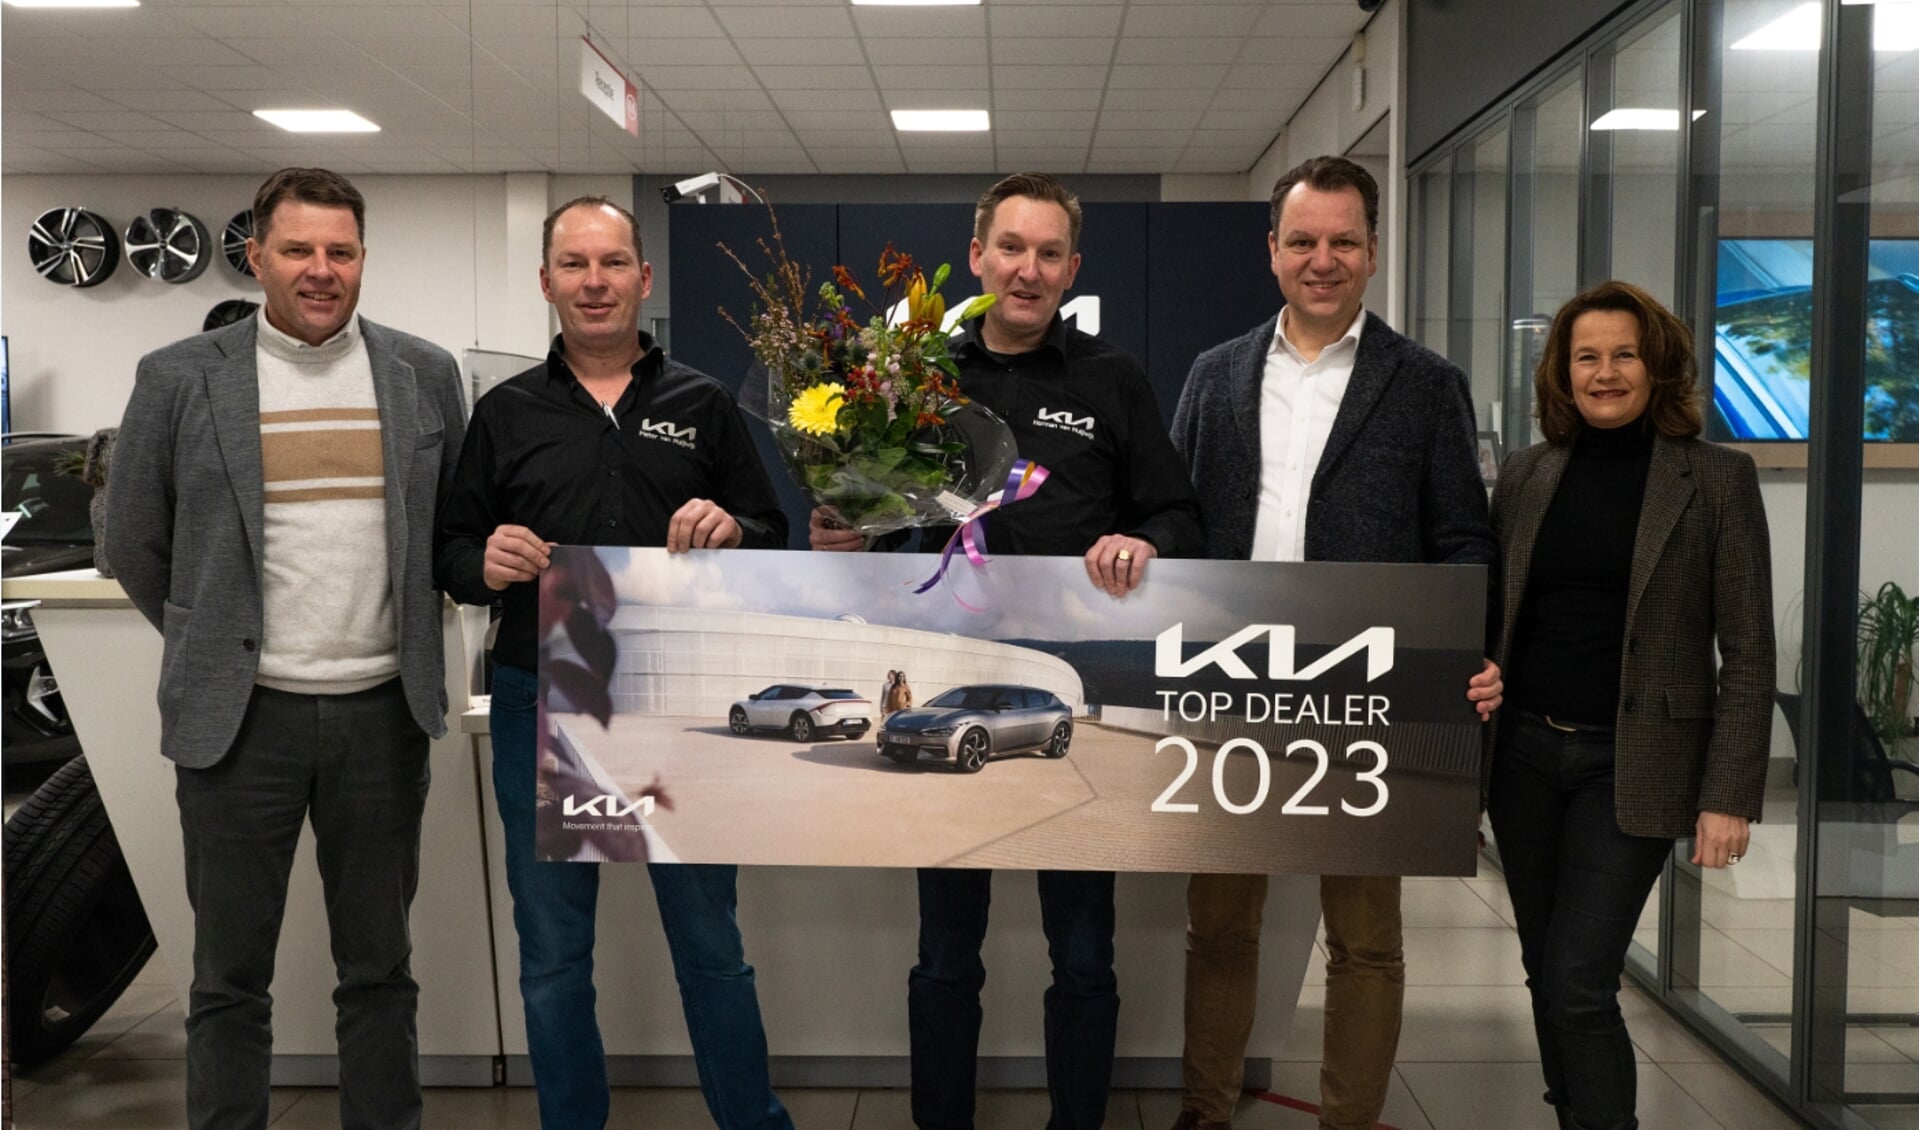  Autobedrijf Van Muijlwijk is trots dat het is uitgeroepen tot Kia Top Dealer 2023. 